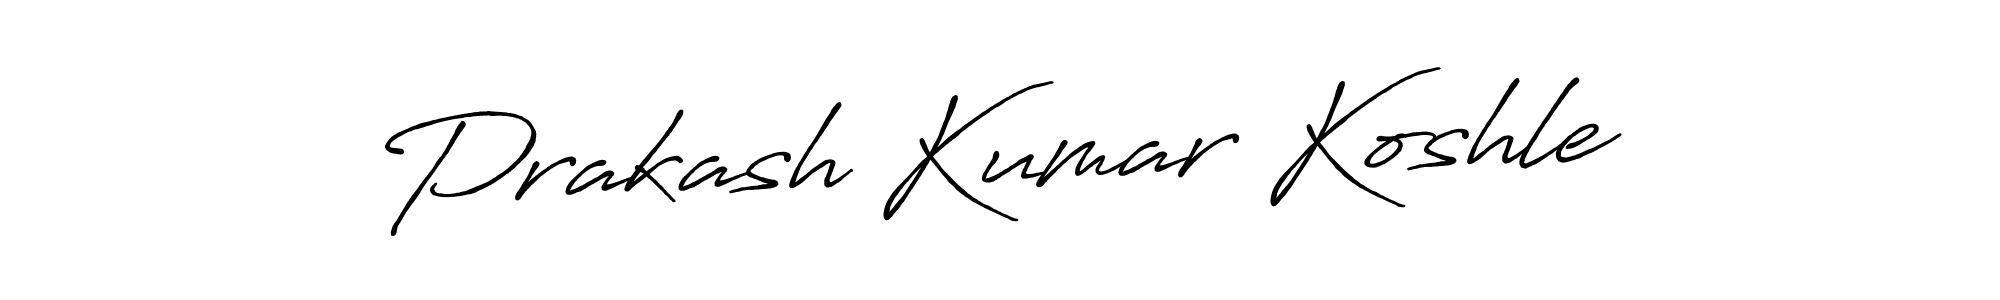 How to Draw Prakash Kumar Koshle signature style? Antro_Vectra_Bolder is a latest design signature styles for name Prakash Kumar Koshle. Prakash Kumar Koshle signature style 7 images and pictures png